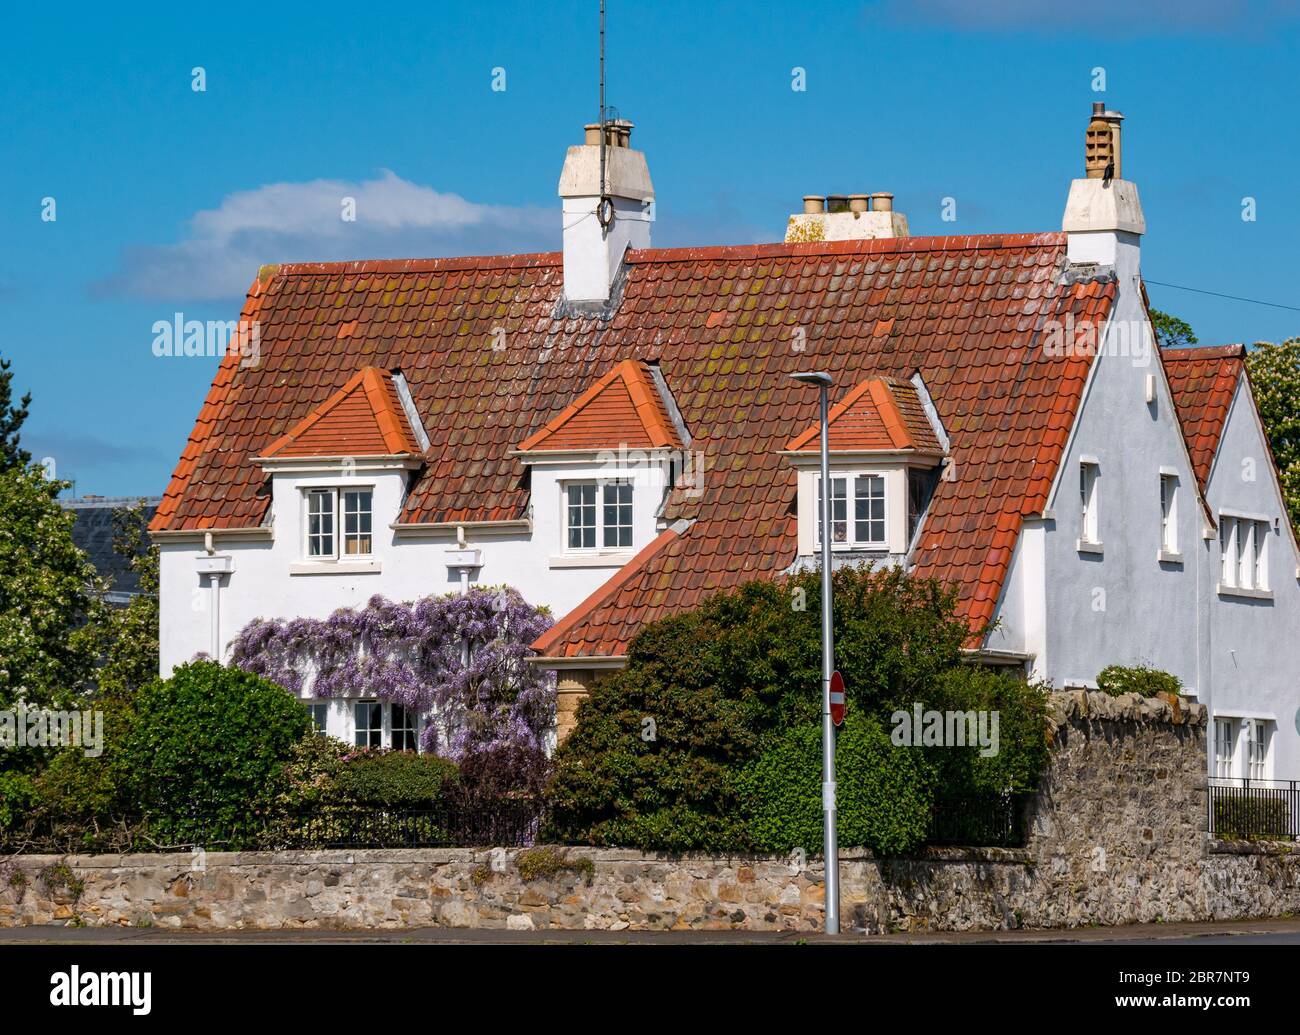 Haus mit Pantieldach und Glyzinien Kletterpflanze in Blüte, Gullane, East Lothian, Schottland, Großbritannien Stockfoto